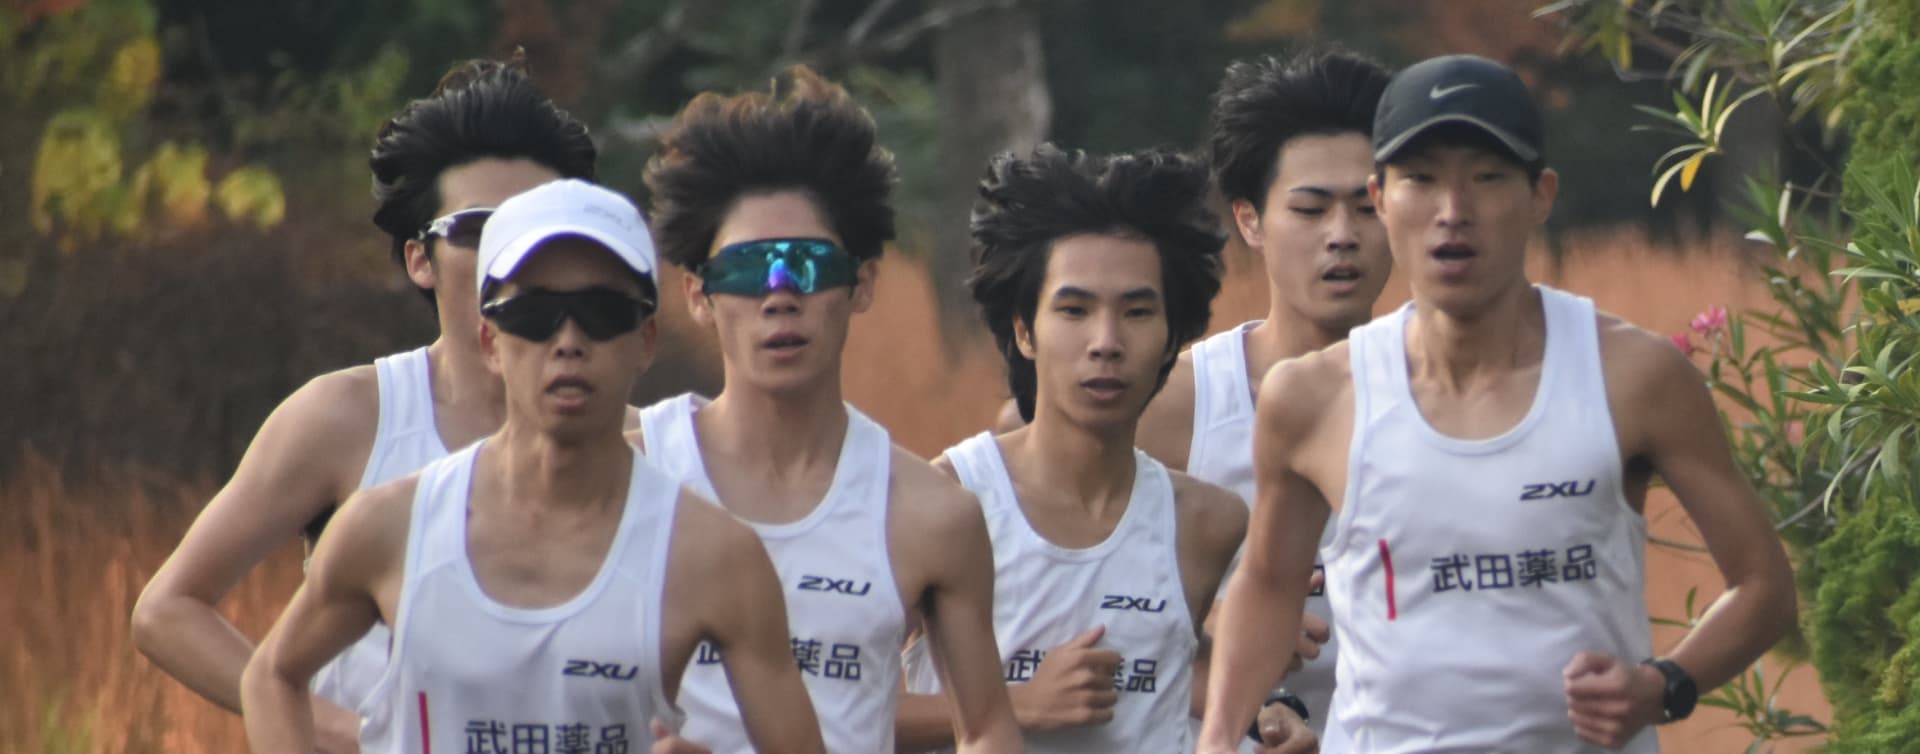 Group of men running